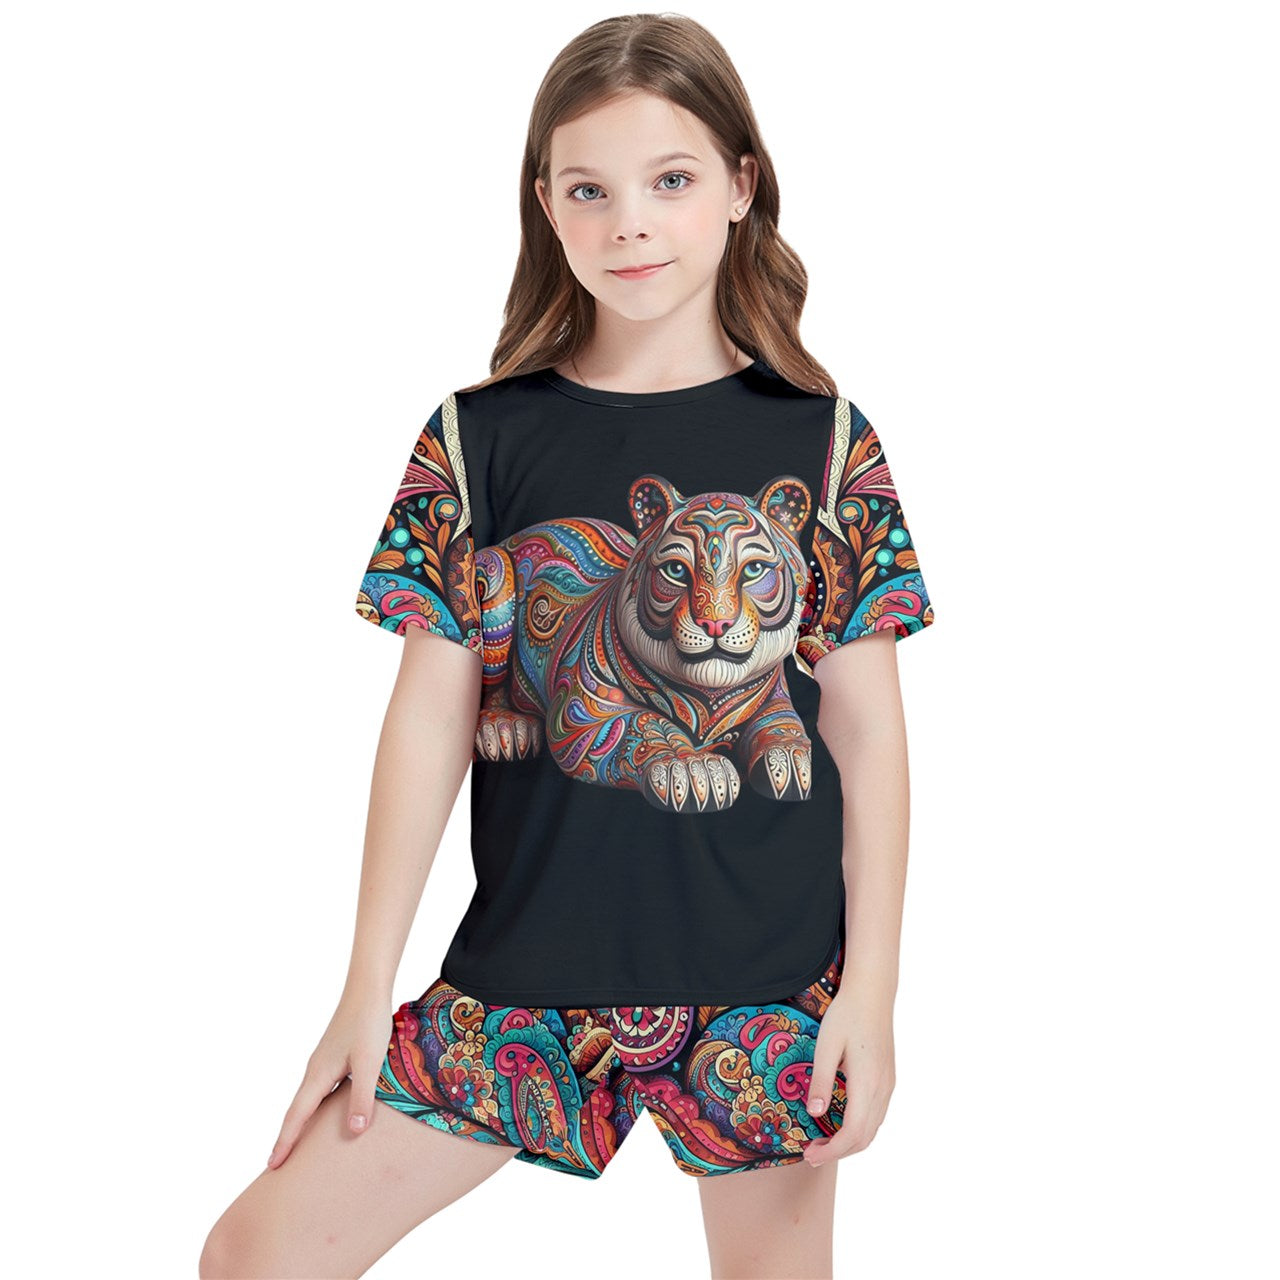 - Paisley Tiger Girls' T-Shirt and Shorts Outfit Set - girls short set at TFC&H Co.